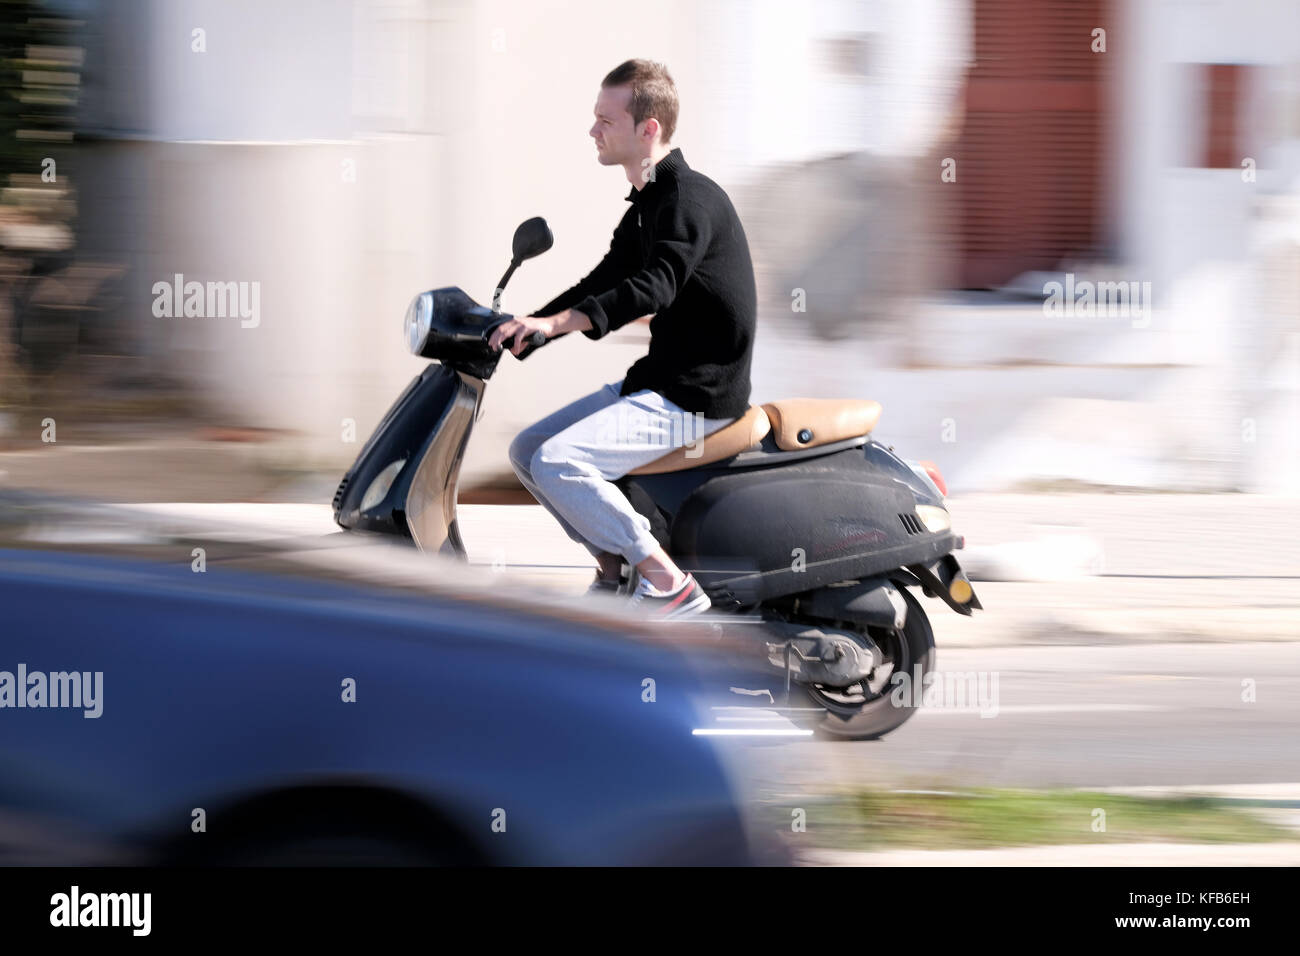 Un joven que monta un scooter a velocidad a lo largo de la carretera. El disparo se panoramaba dando una impresión de movimiento. Tomado cerca de la ciudad de Rodas, Rodas, Grecia Foto de stock